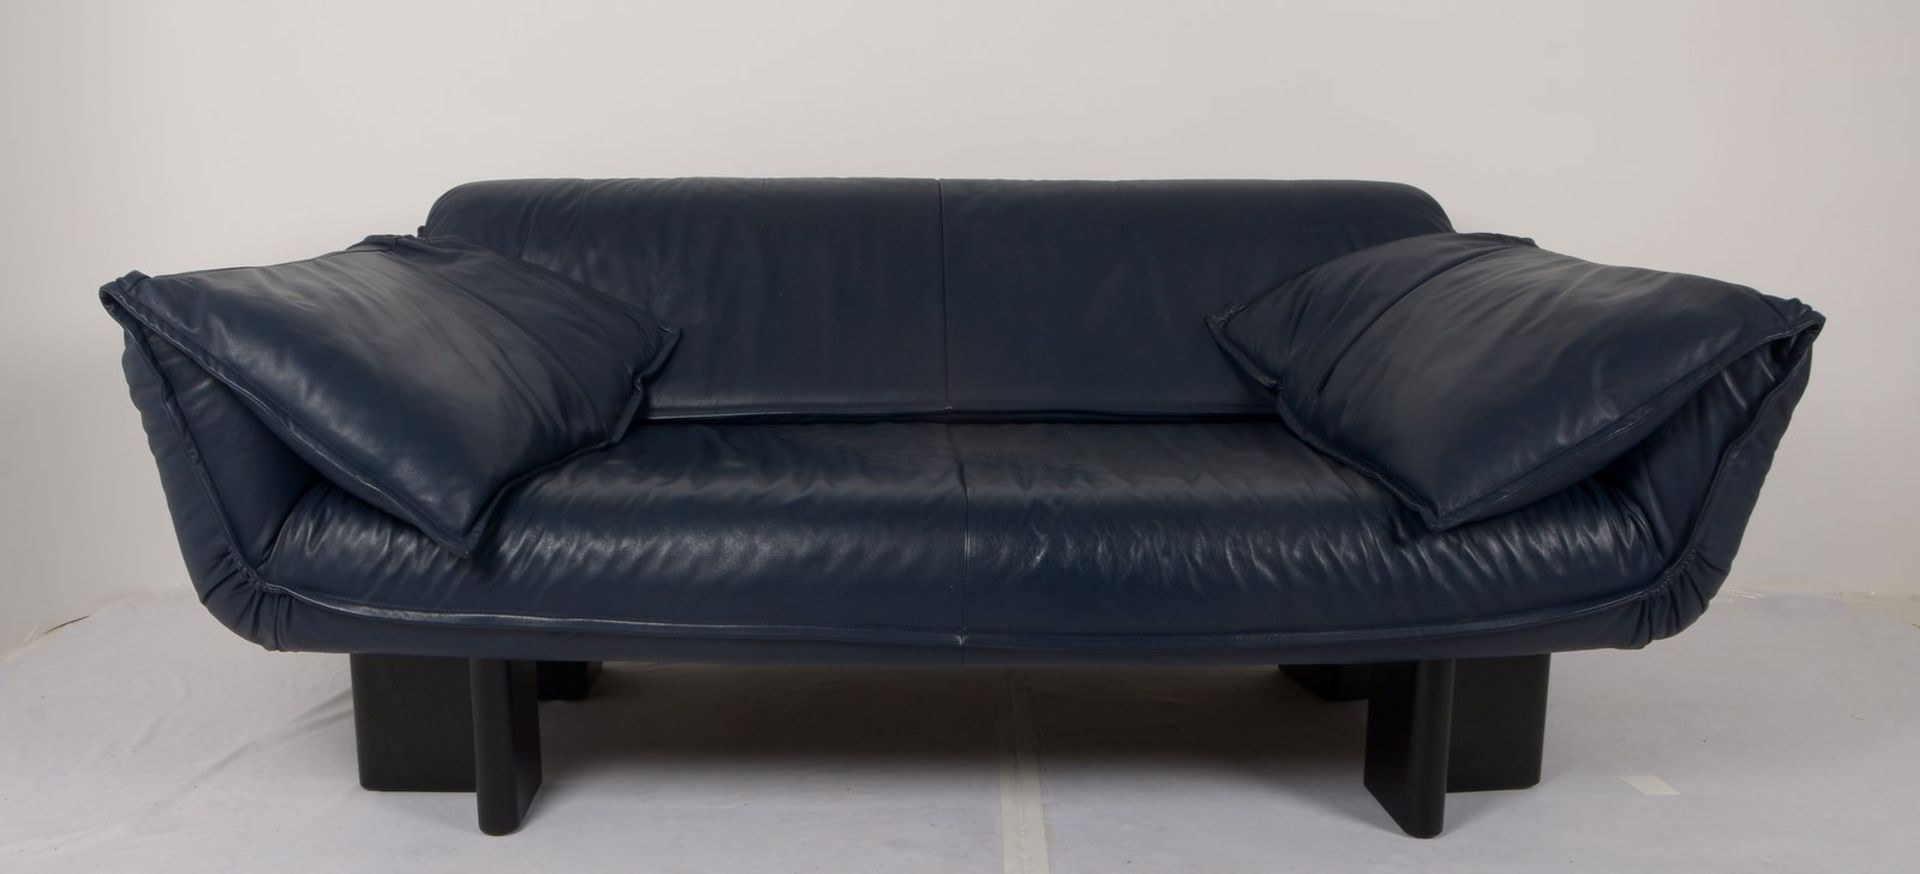 Birdie, Designer-Sofa/Zweisitzer, nachtblaues Echtleder, Sitz mit Federung, Rückenlehne hochklappbar